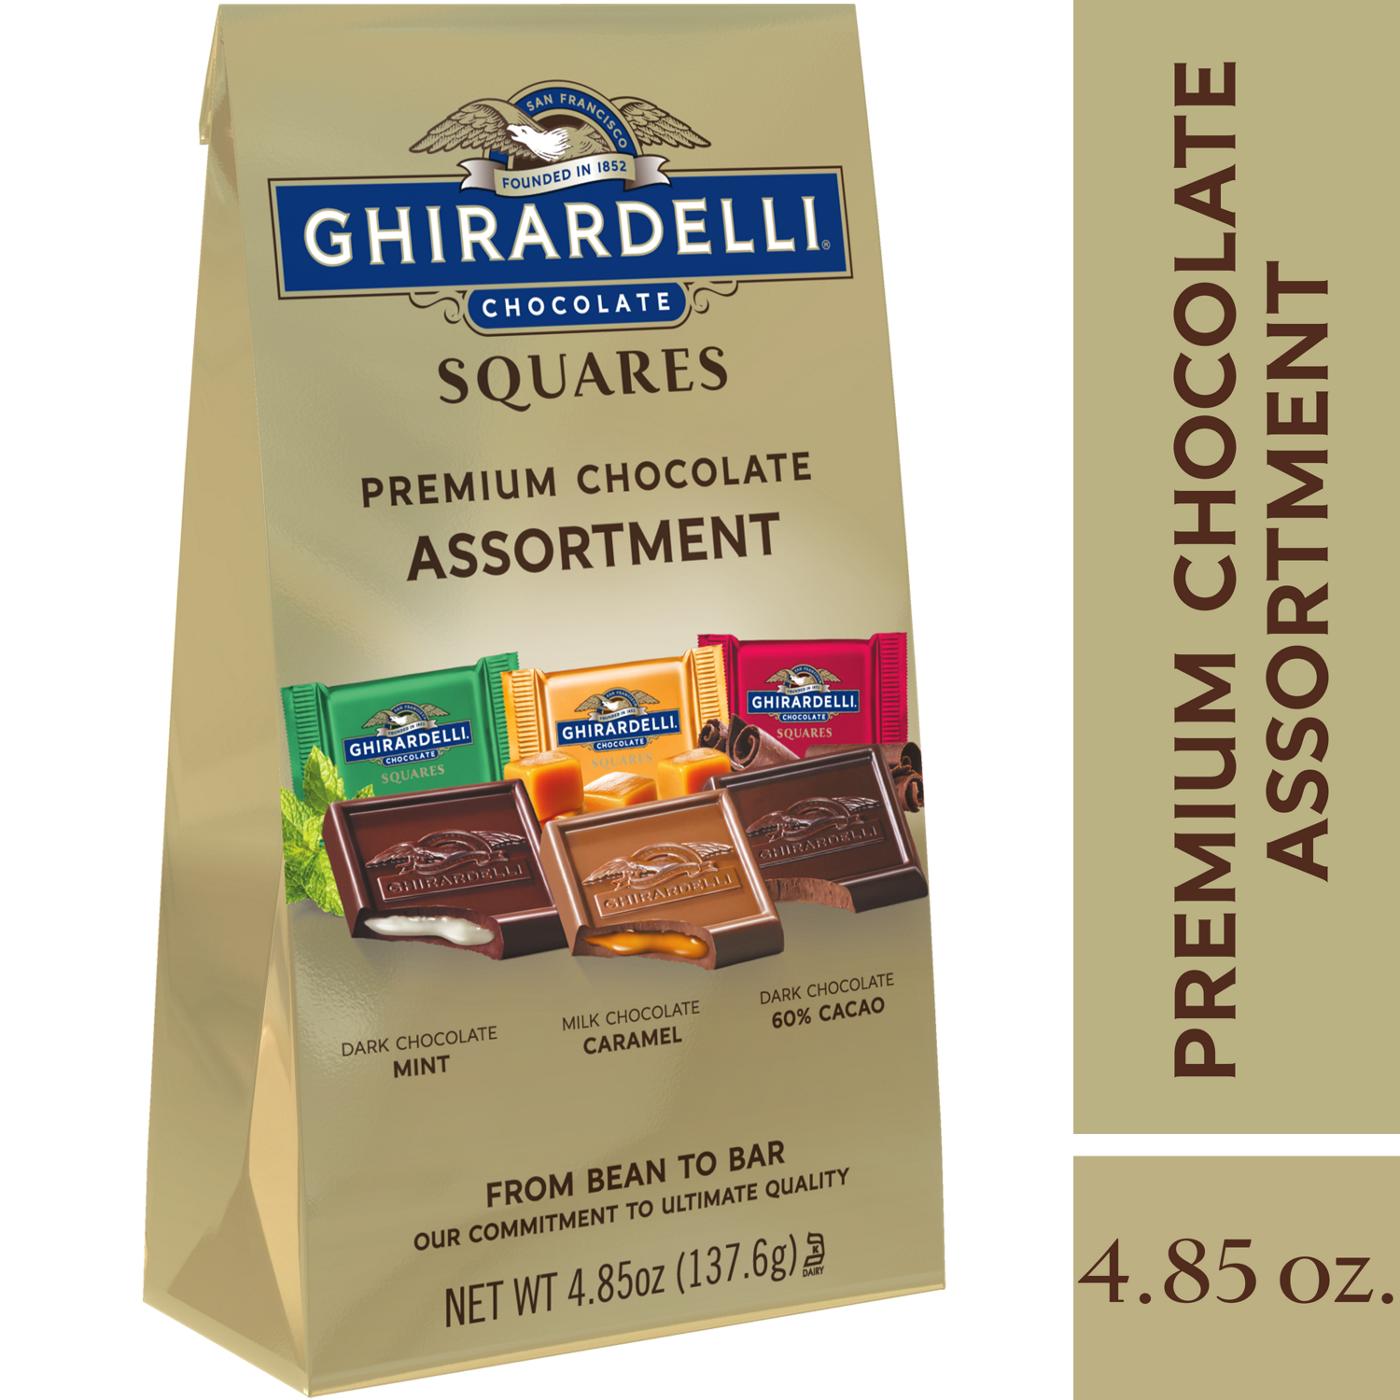 Ghirardelli Premium Chocolate Assortment Squares; image 6 of 6